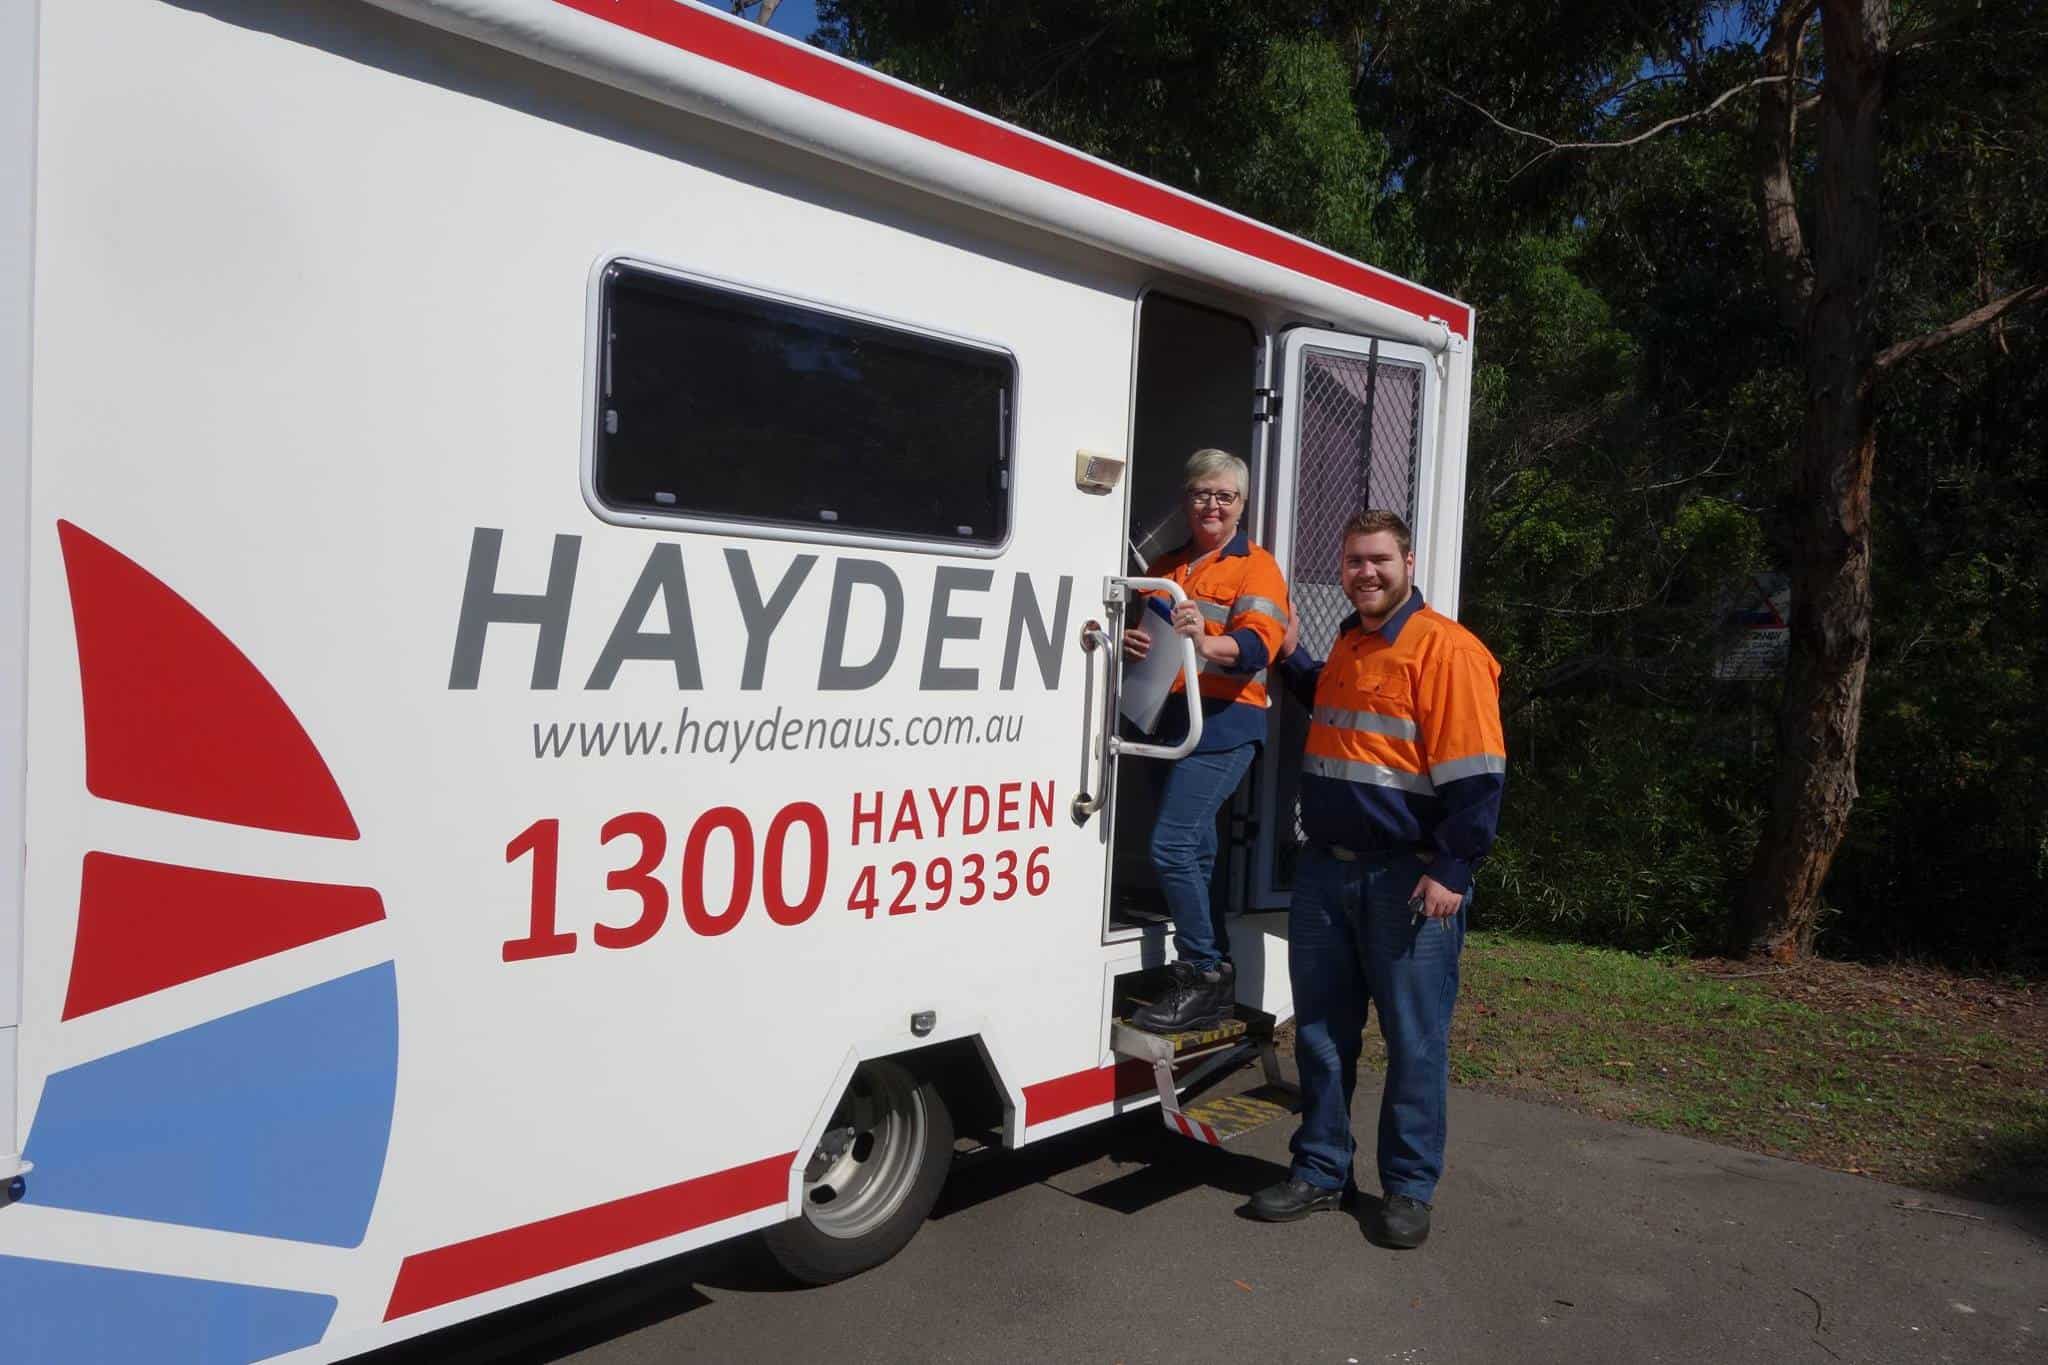 Testing Services - Hayden Health & Safety